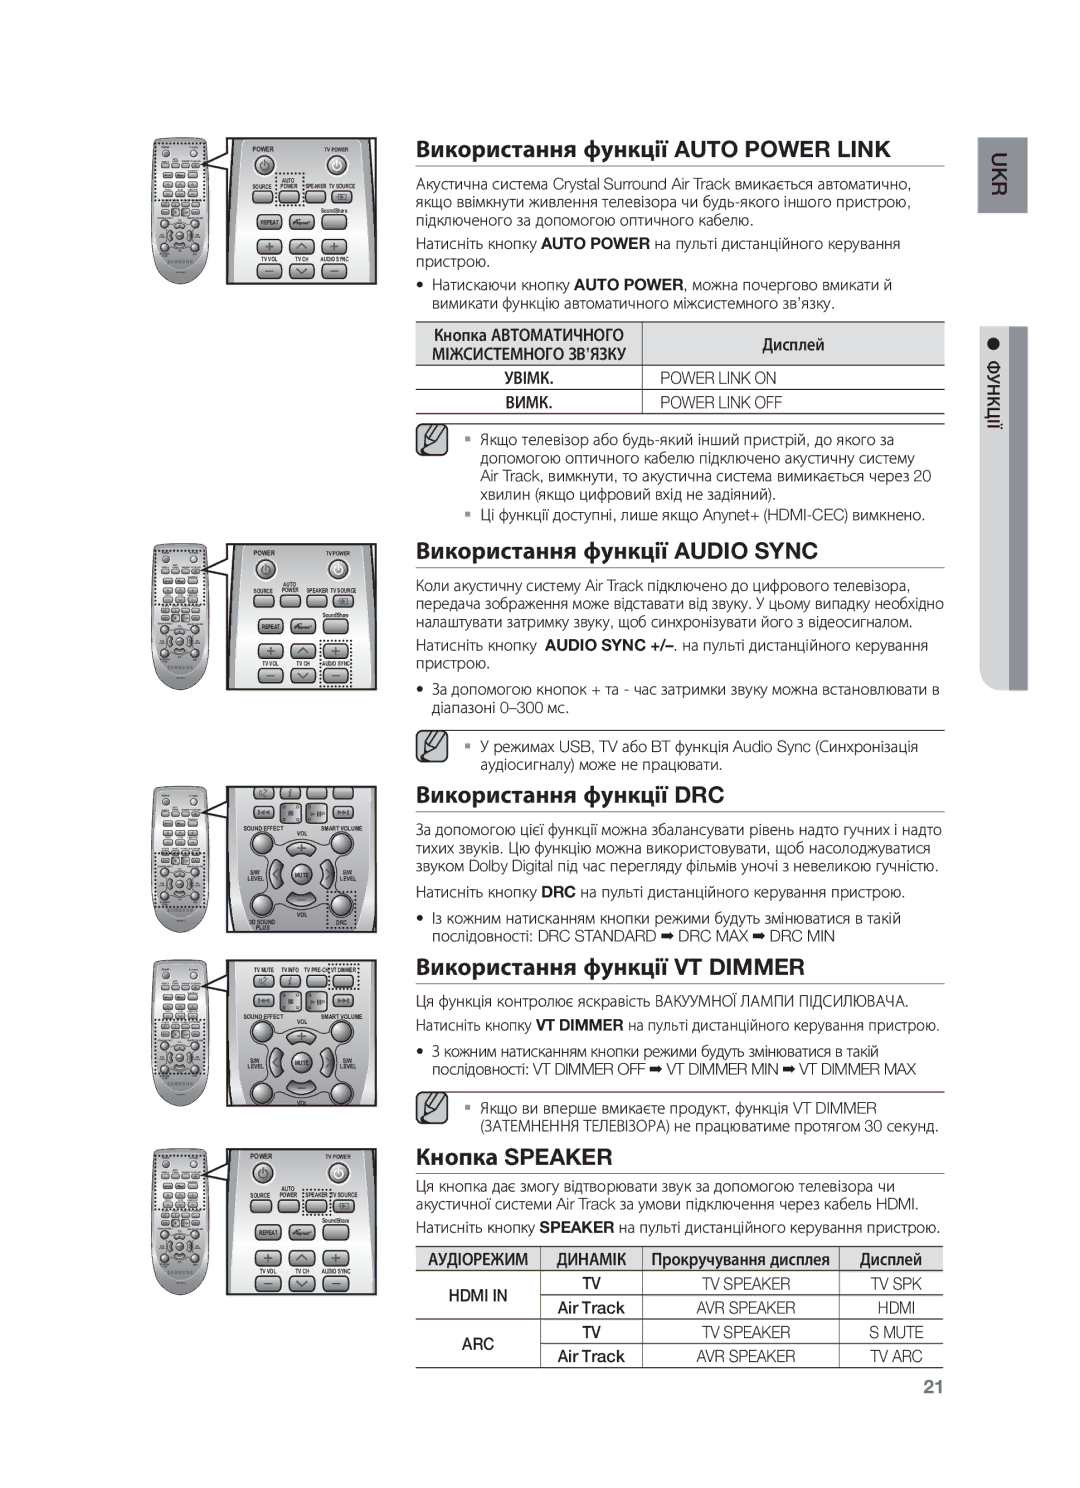 Samsung HW-F750/RU manual Використання функції Auto Power Link, Використання функції Audio Sync, Використання функції DRC 